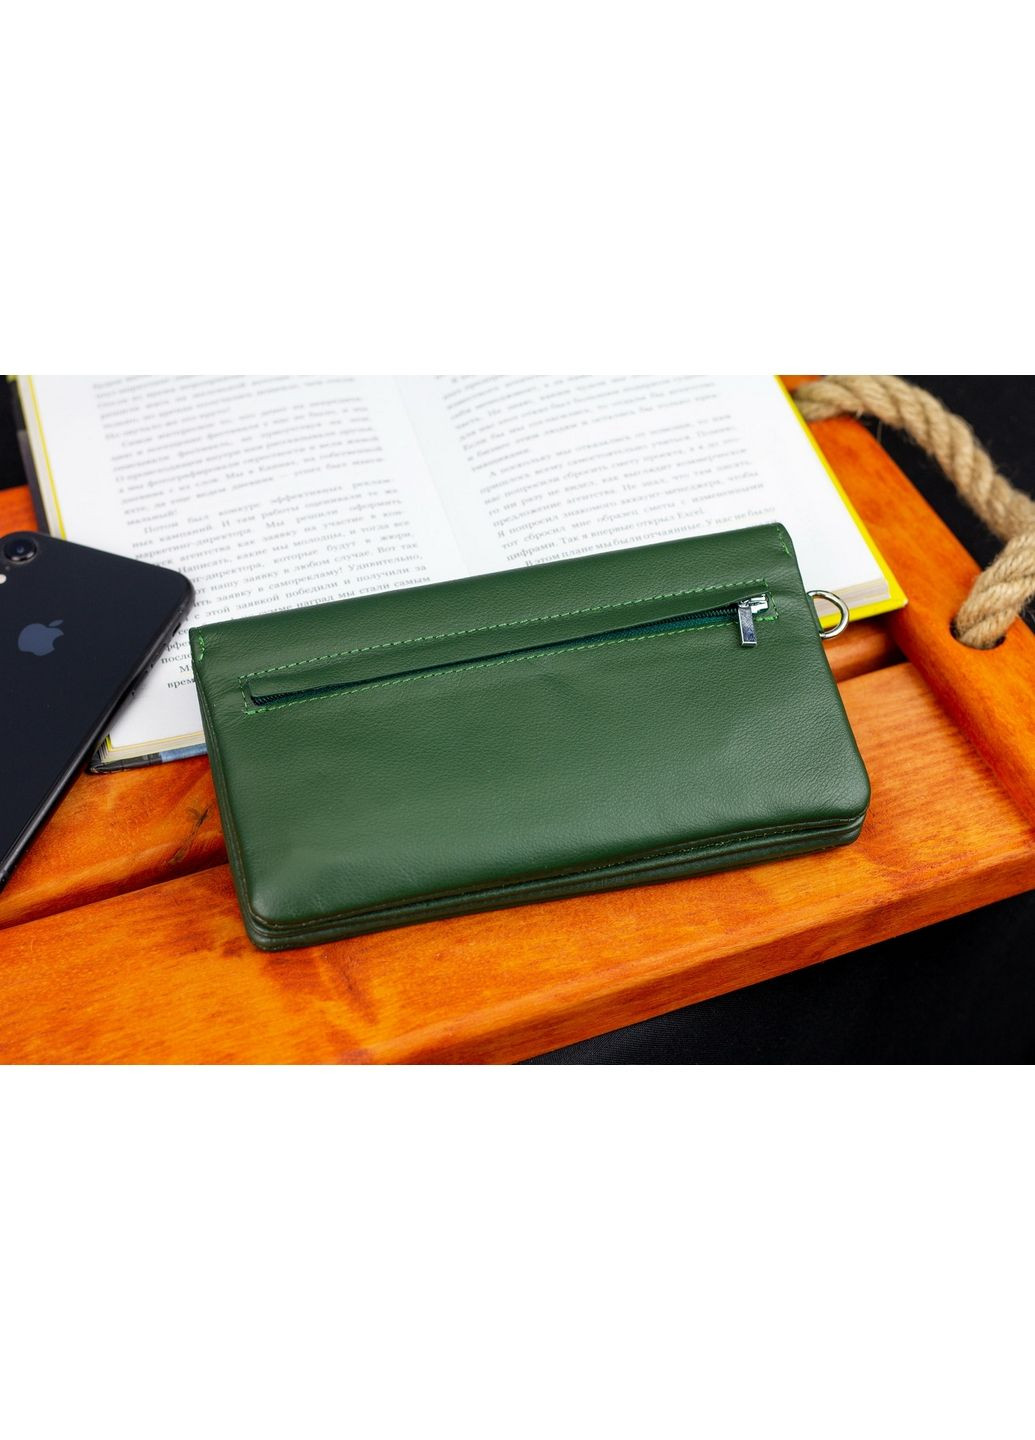 Жіночий шкіряний гаманець st leather (288136267)